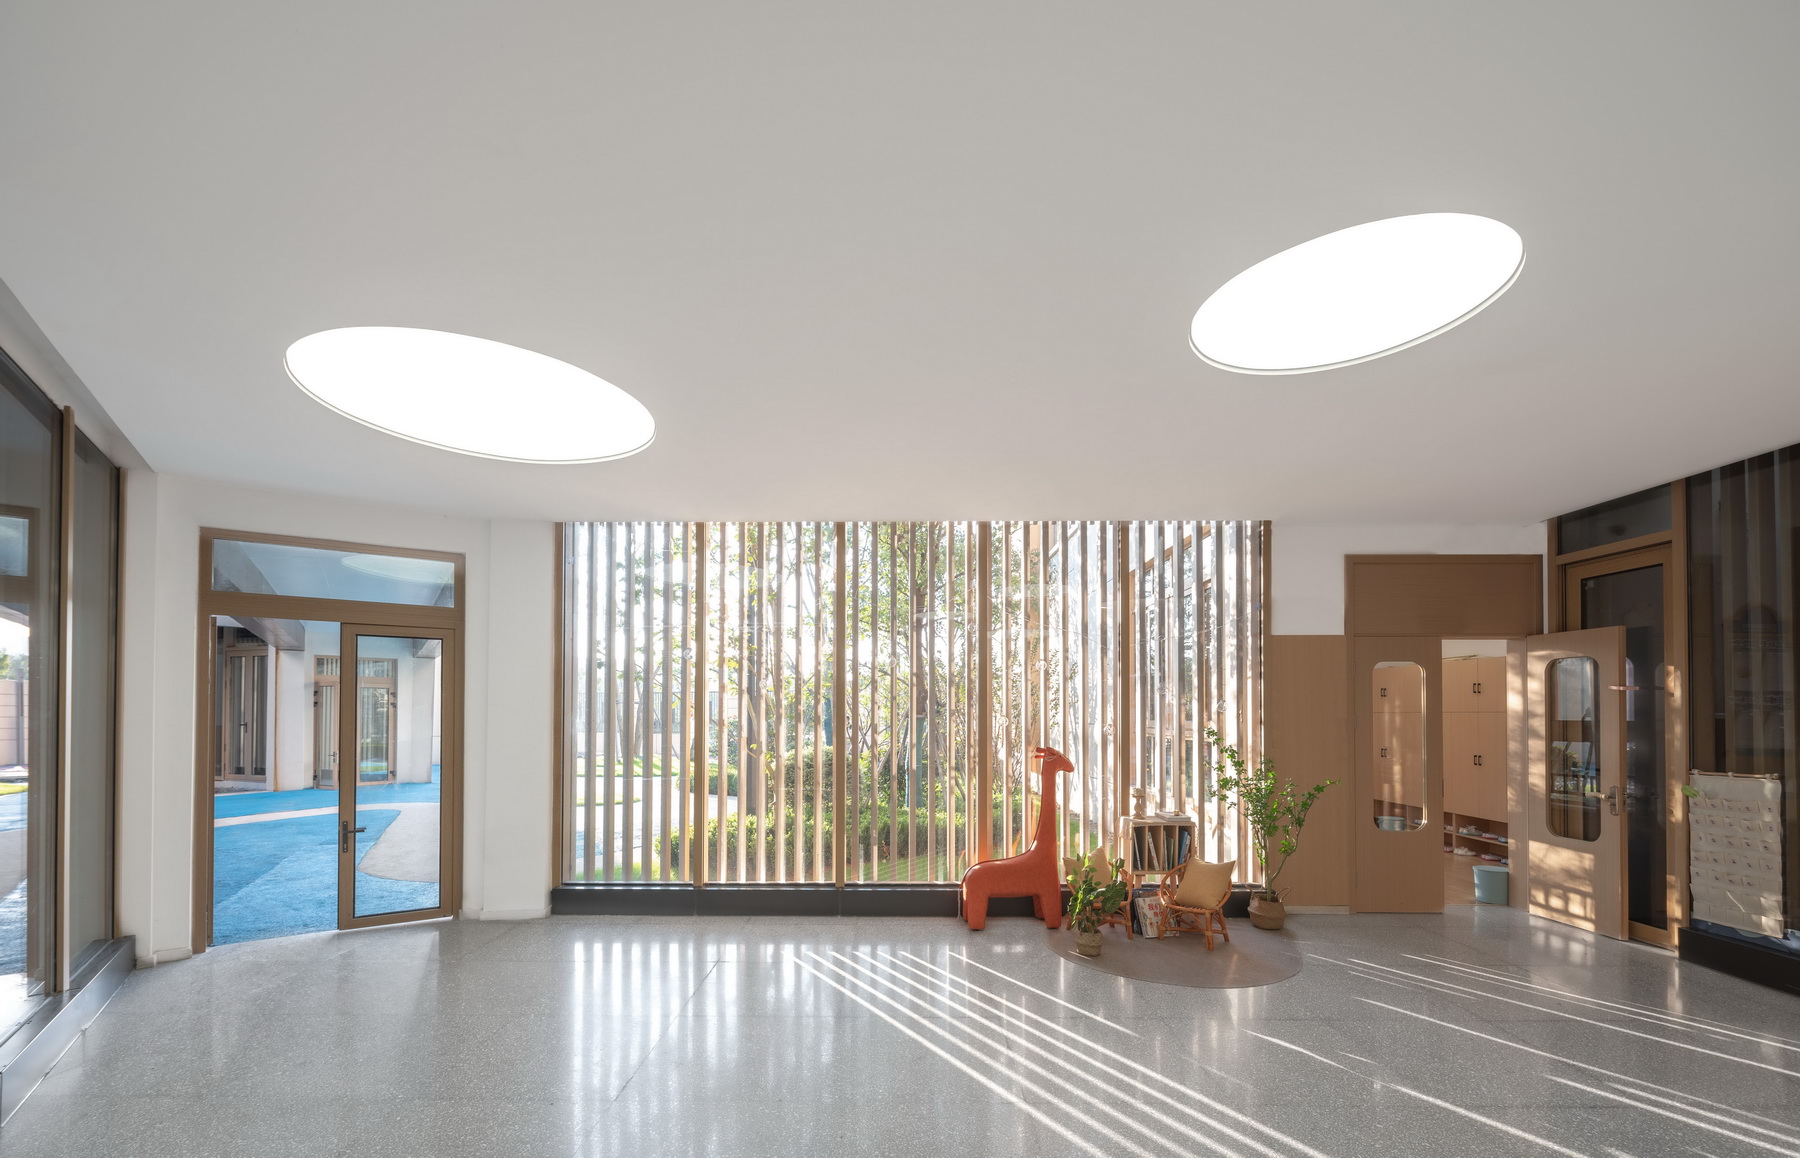 国科温州第一幼儿园 建筑设计 / 成执设计